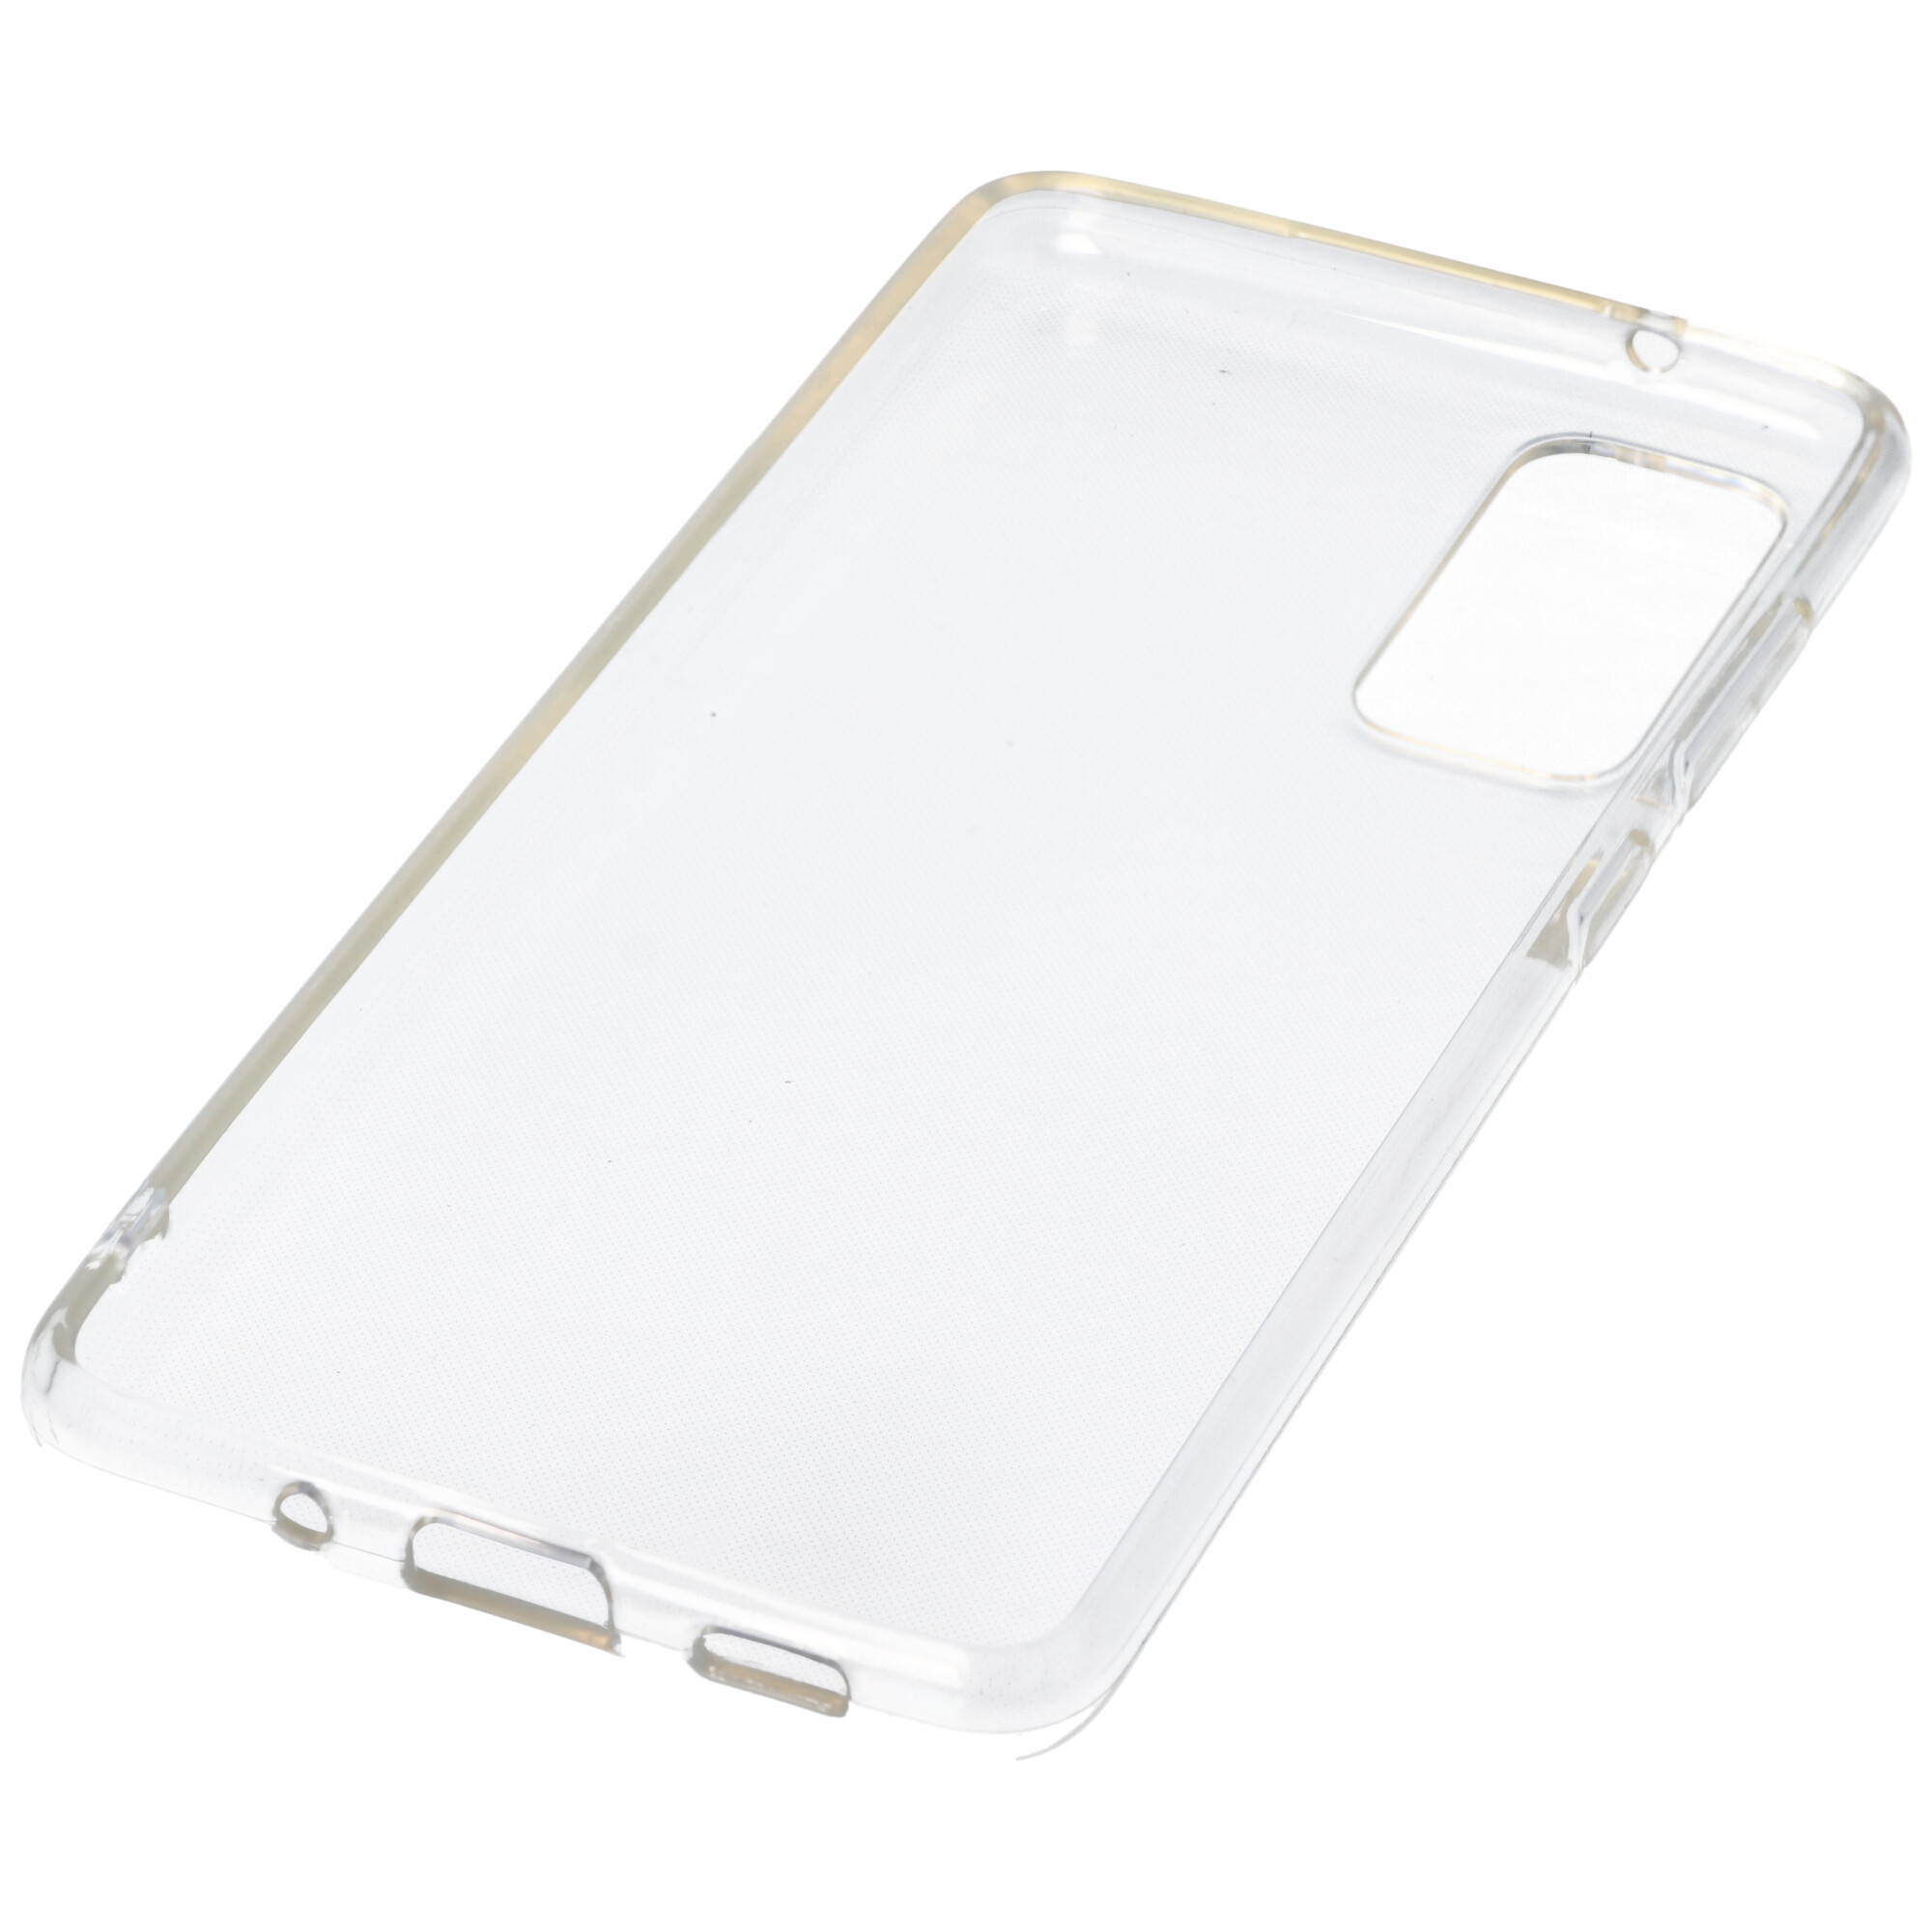 Hülle passend für Samsung Galaxy S20 FE - transparente Schutzhülle, Anti-Gelb Luftkissen Fallschutz Silikon Handyhülle robustes TPU Case